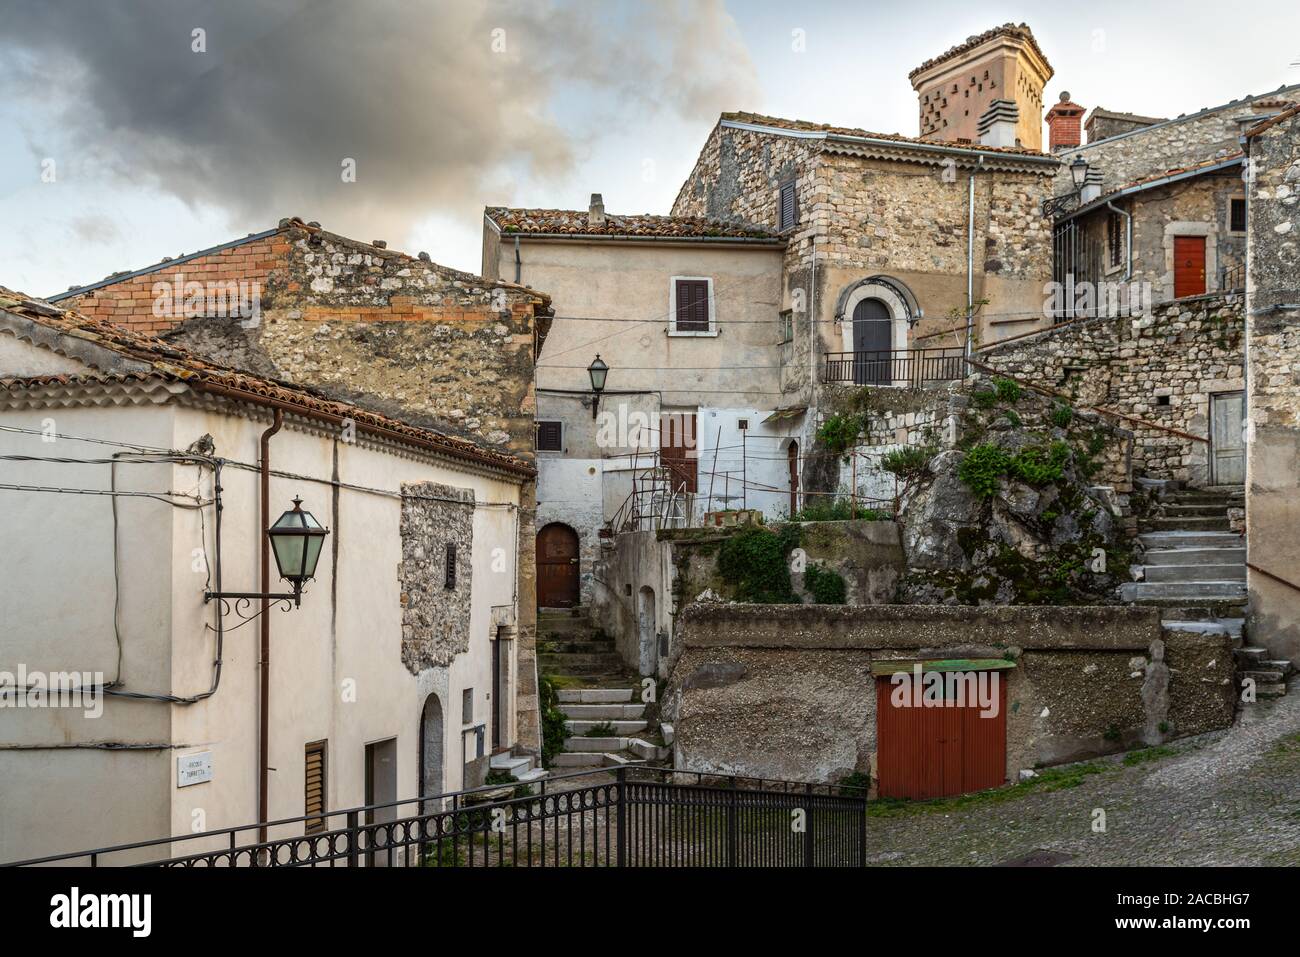 spontaneous architecture of a glimpse of the town, Bagnoli del Trigno Stock Photo